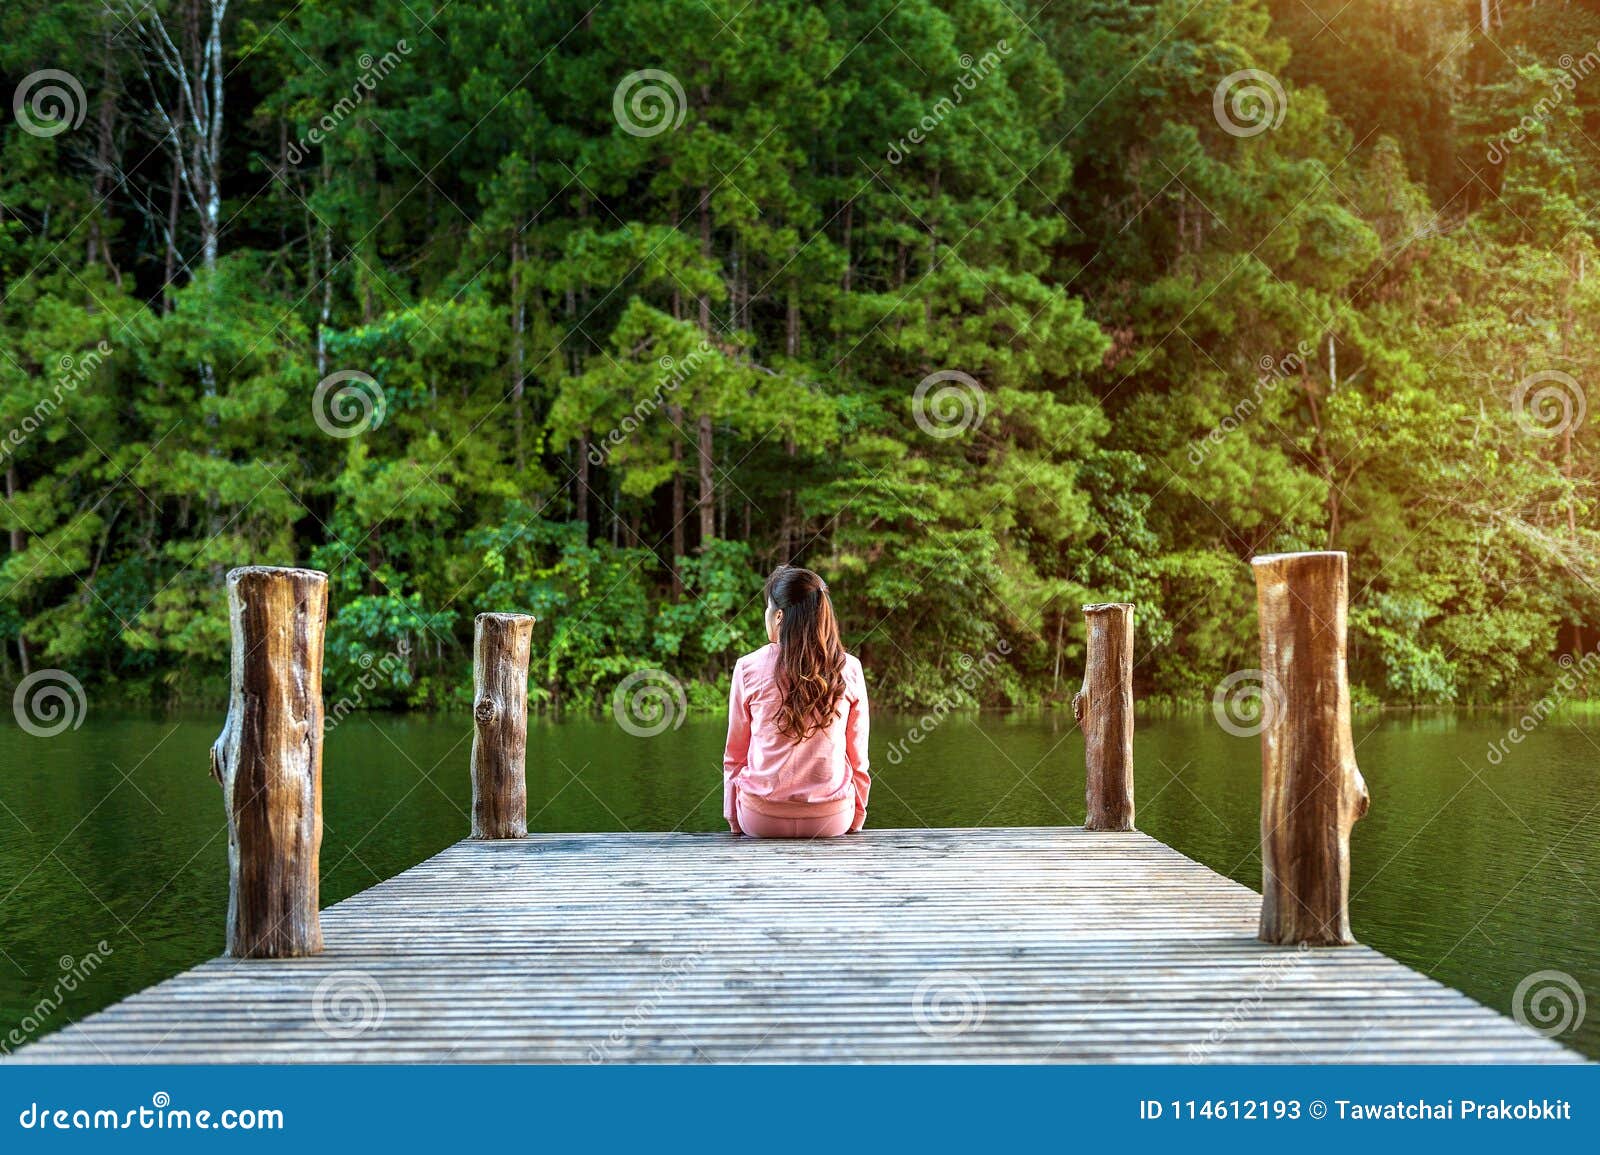 Девочка соблазняет на деревянном мосту.